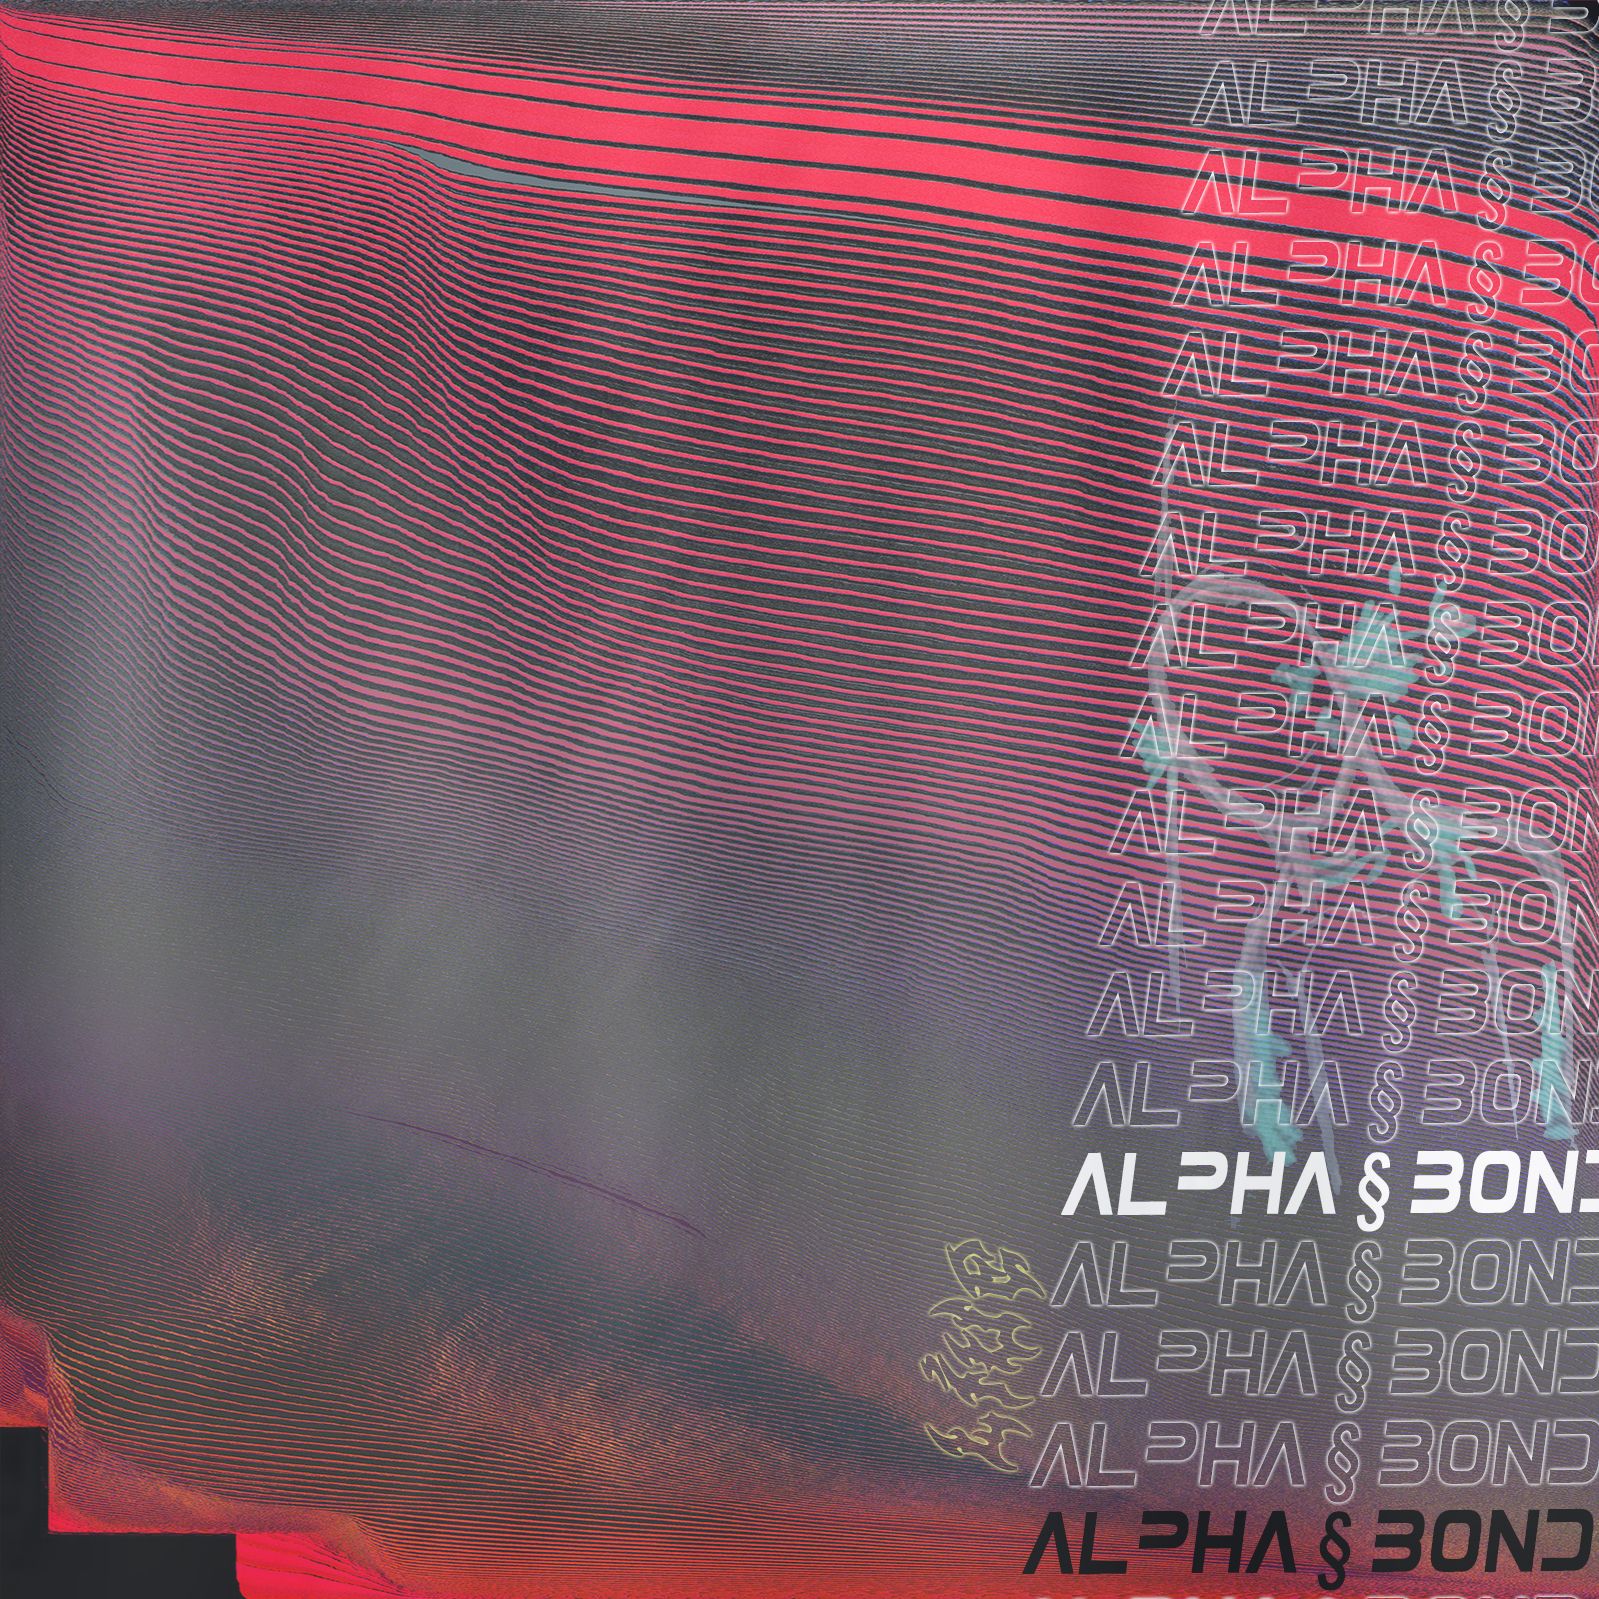 Pakua alpha § bond